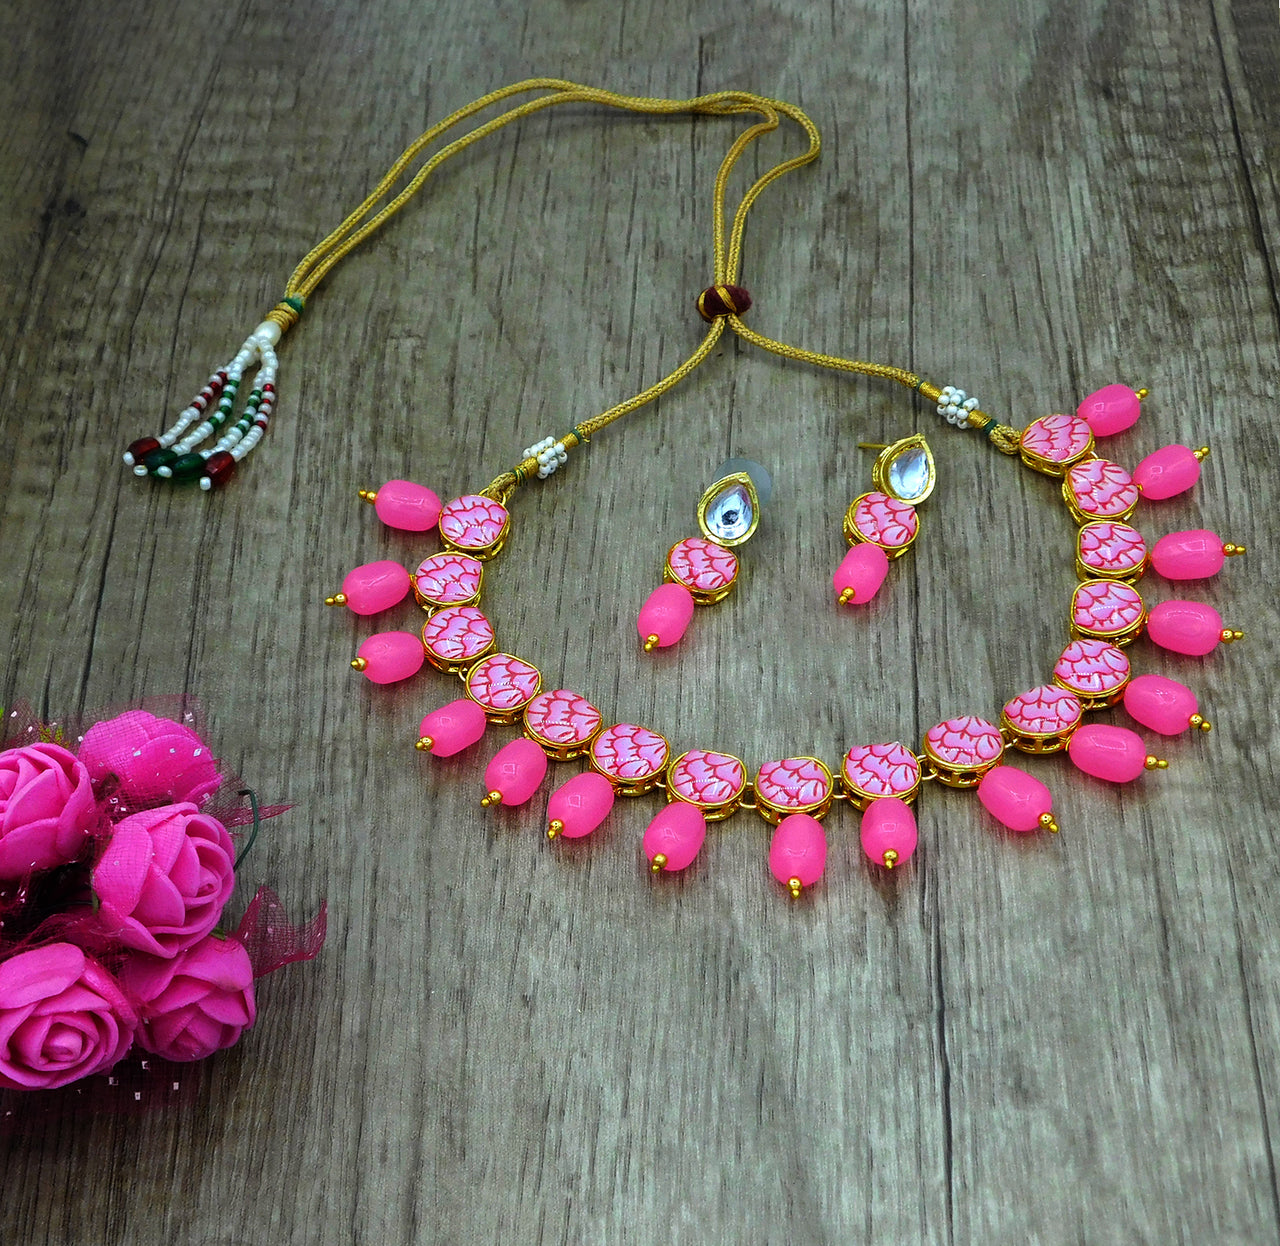 Sujwel Painting with Floral Design Chokar Necklace Set (08-0430) - Sujwel